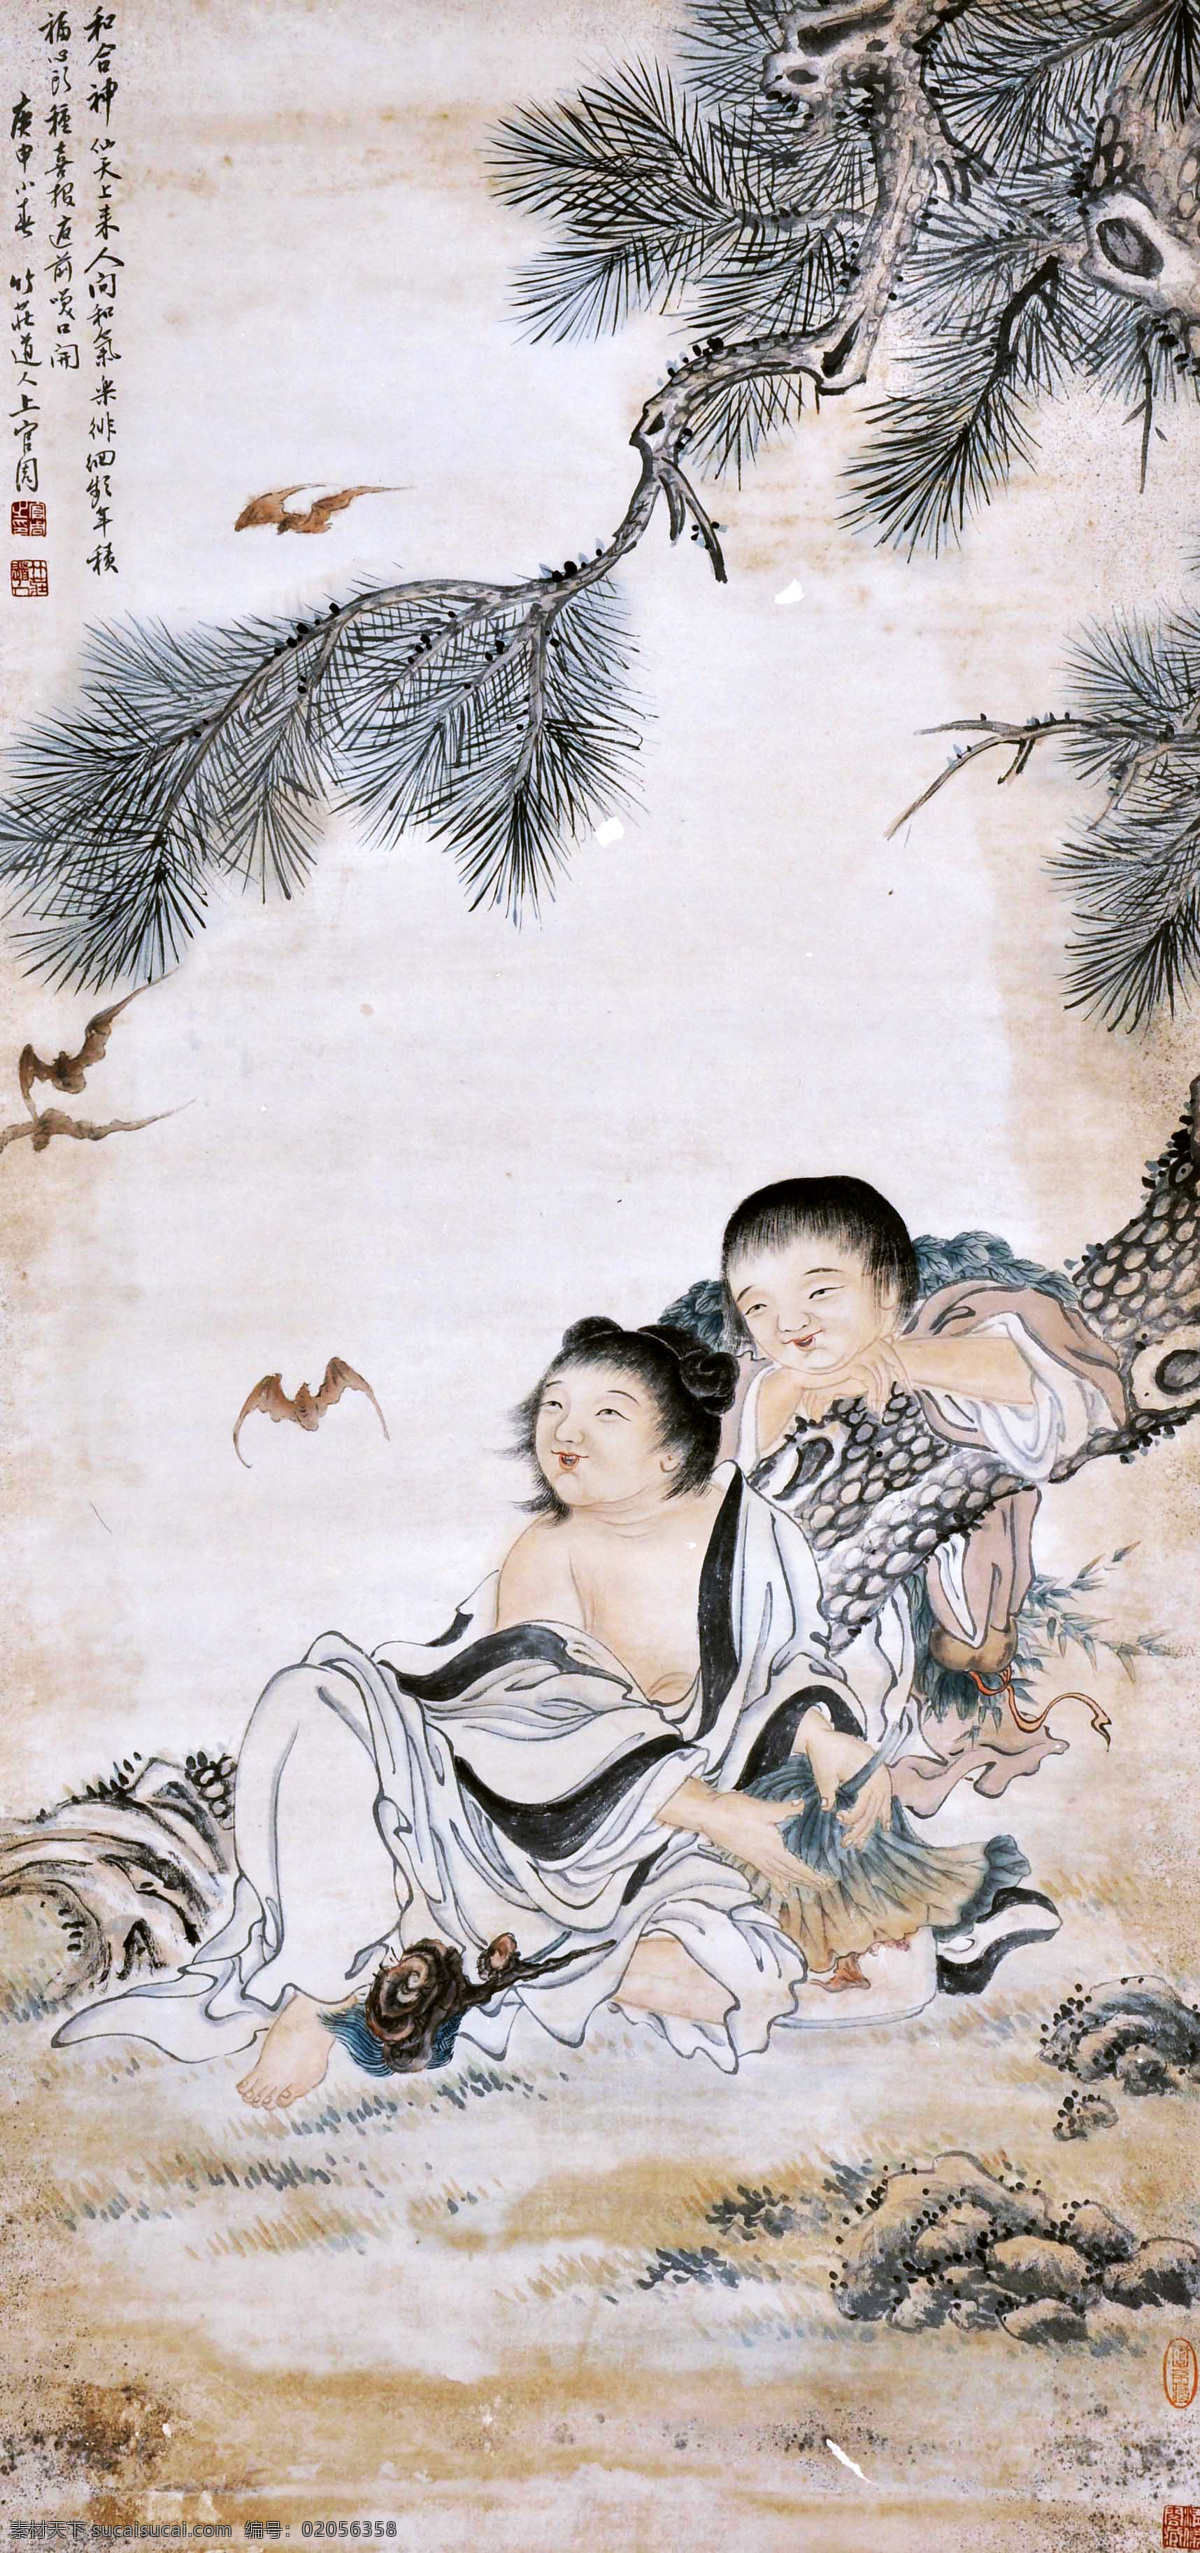 上官周 和合二仙 人物 写意 水墨画 国画 中国画 传统画 名家 绘画 艺术 文化艺术 绘画书法